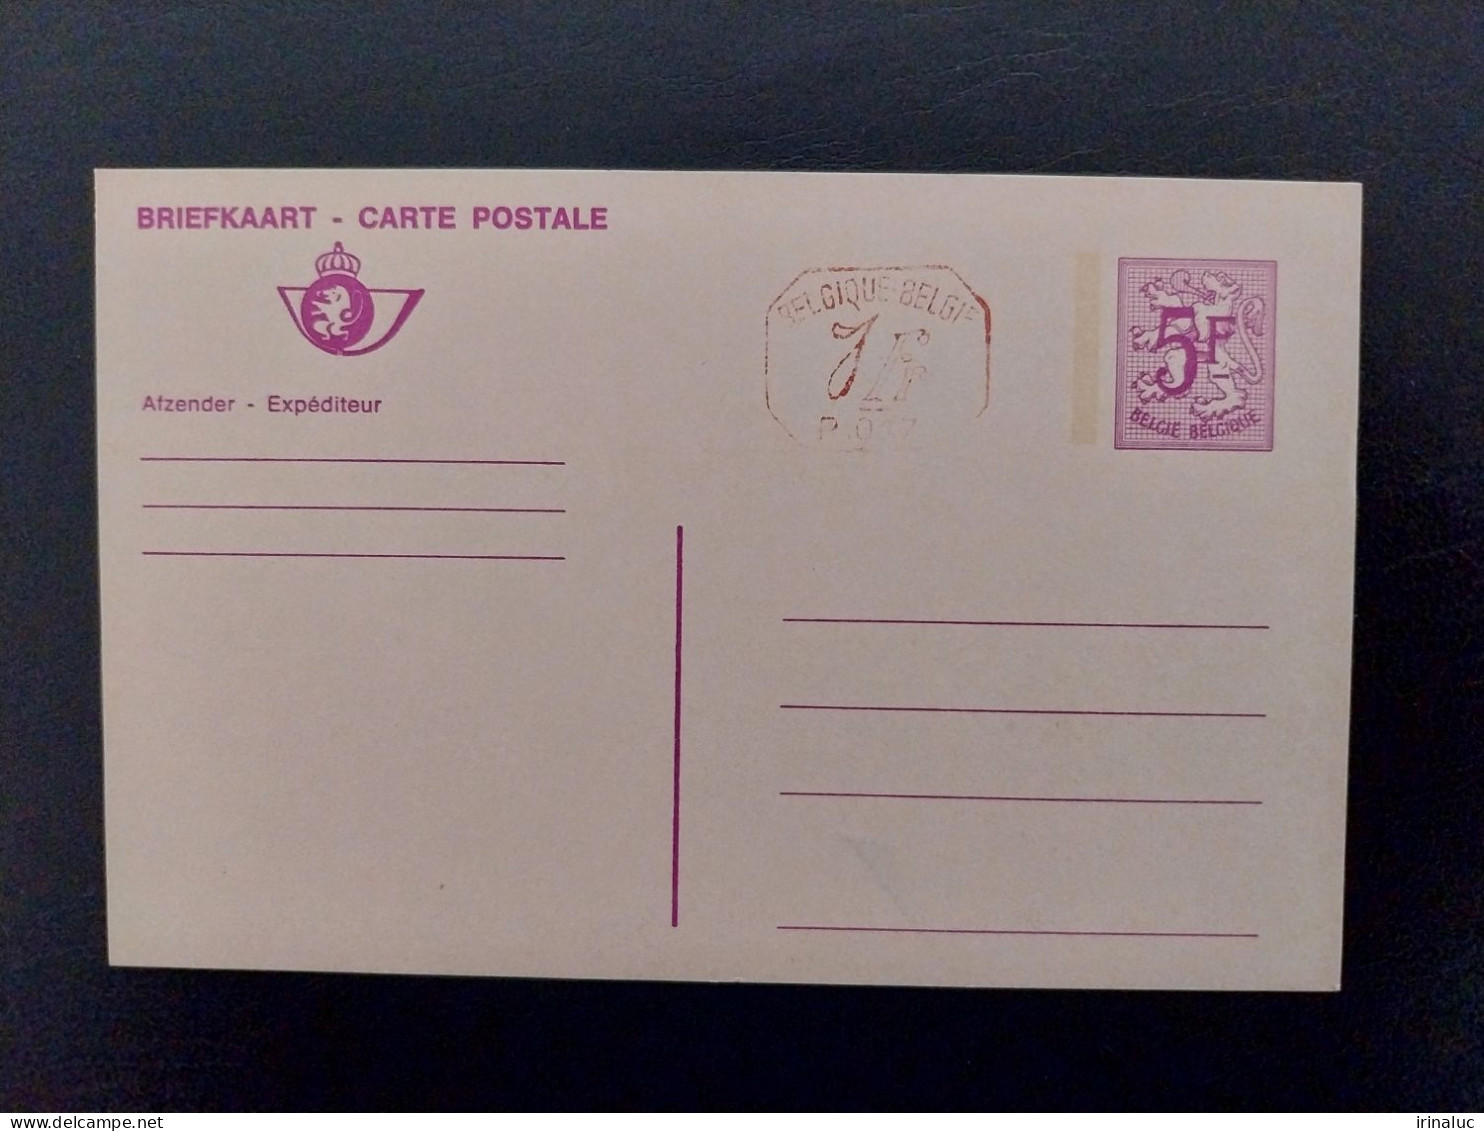 Briefkaart 185-II M1 P017 - Cartes Postales 1951-..